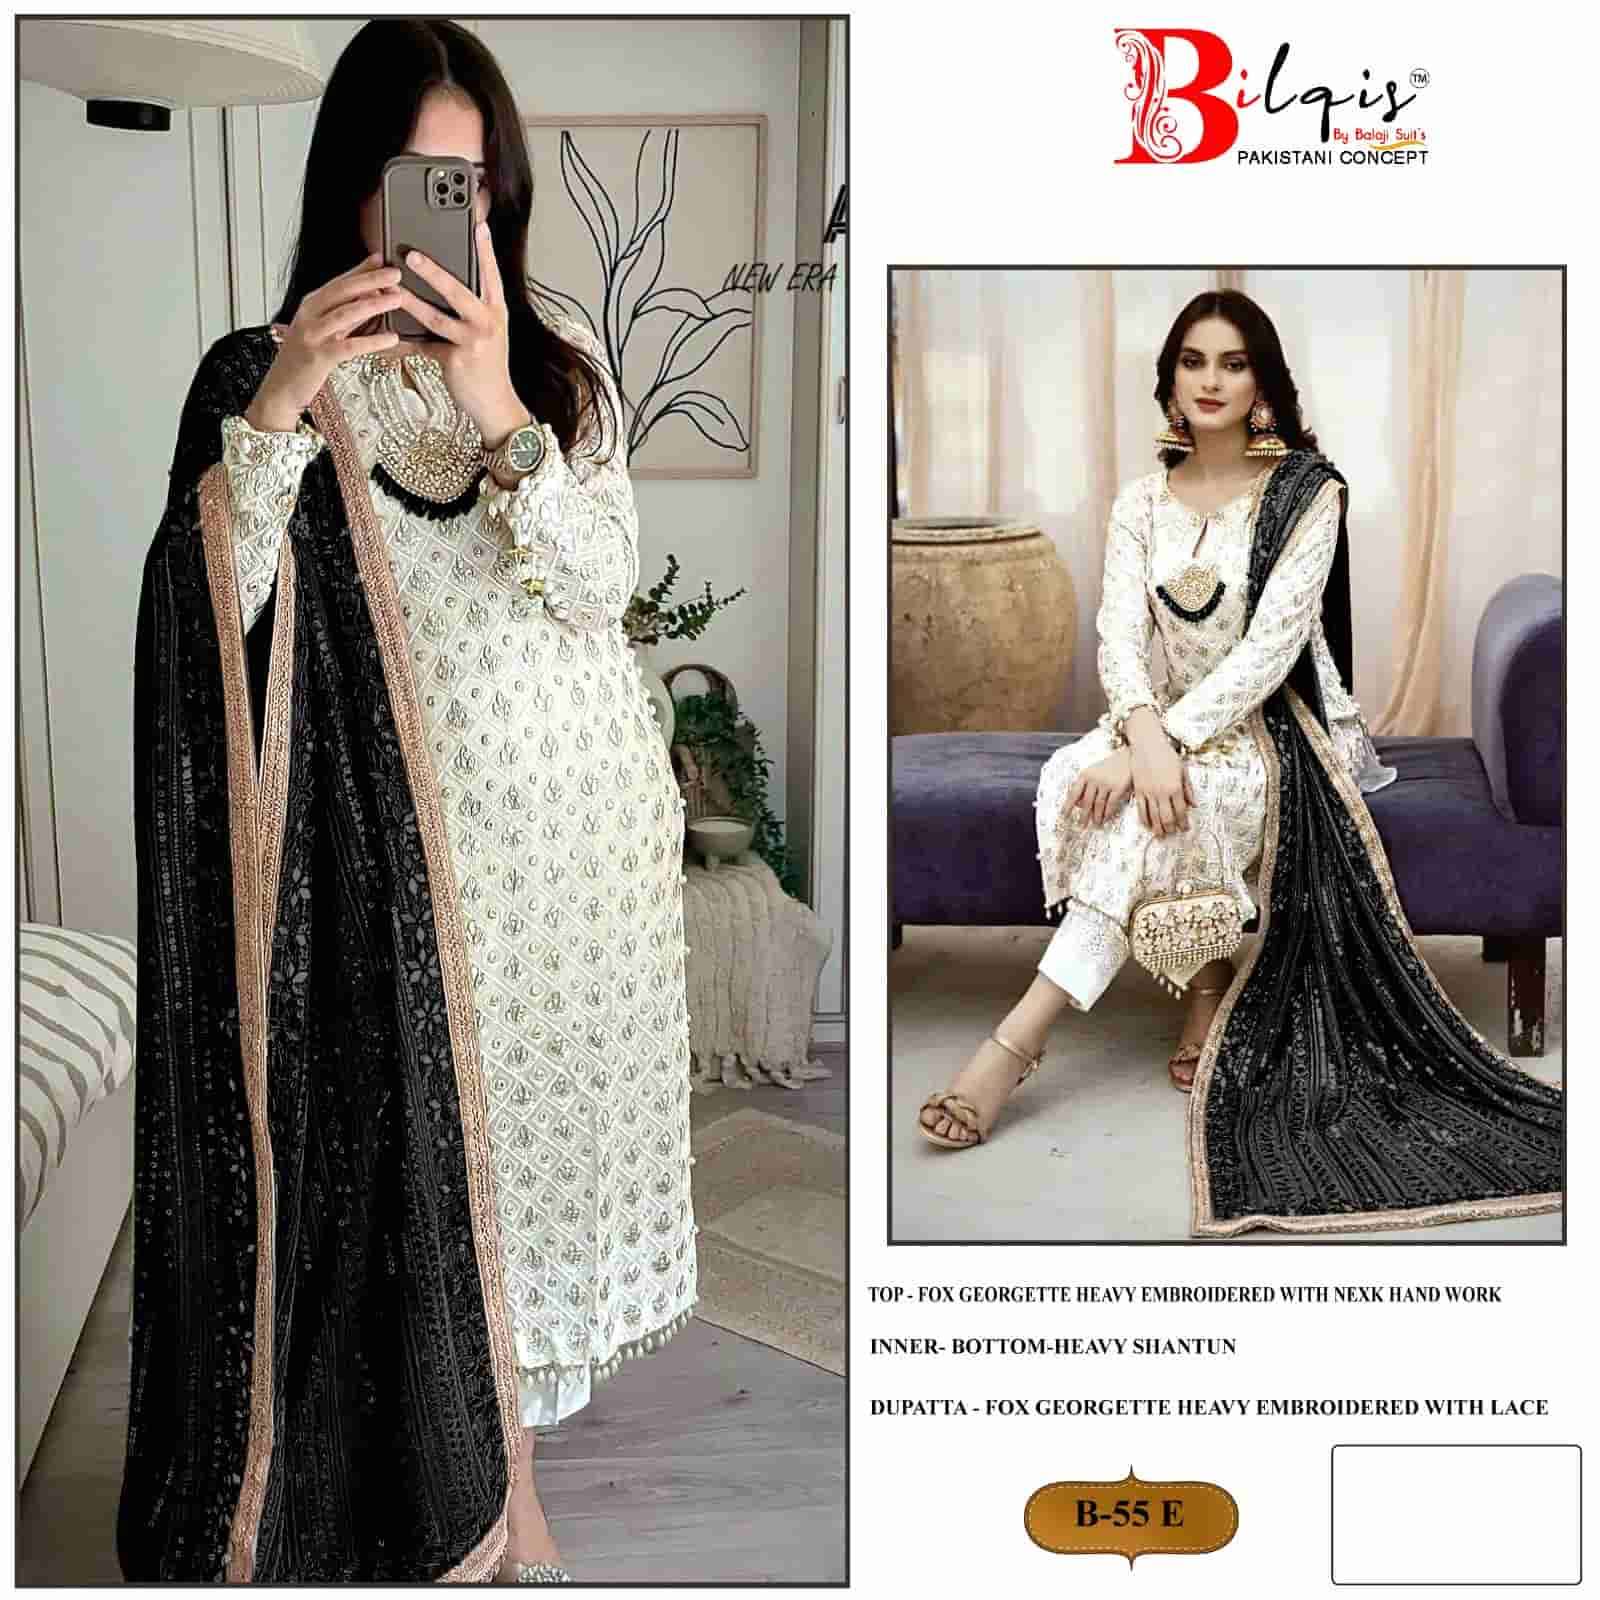 Bilqis B 55 Colors Exclusive Fancy Designer Style Salwar Kameez Exporter